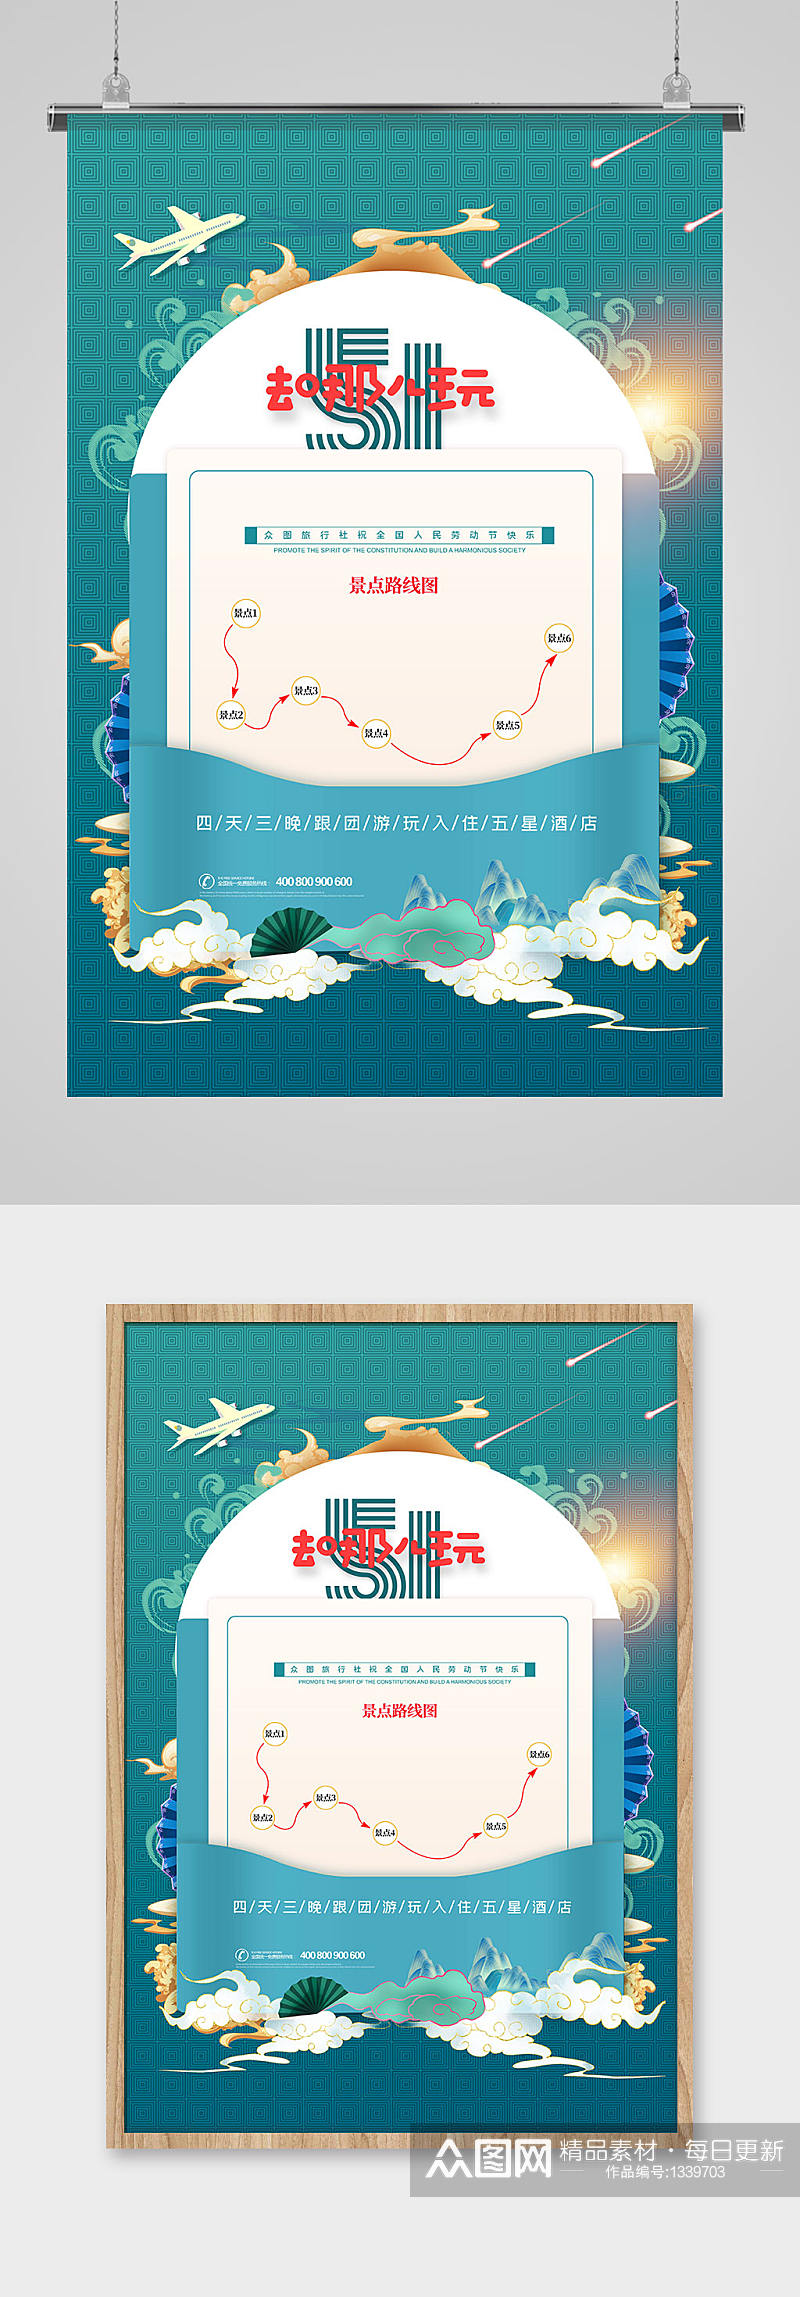 简约中国风五一去哪儿玩旅游宣传海报素材